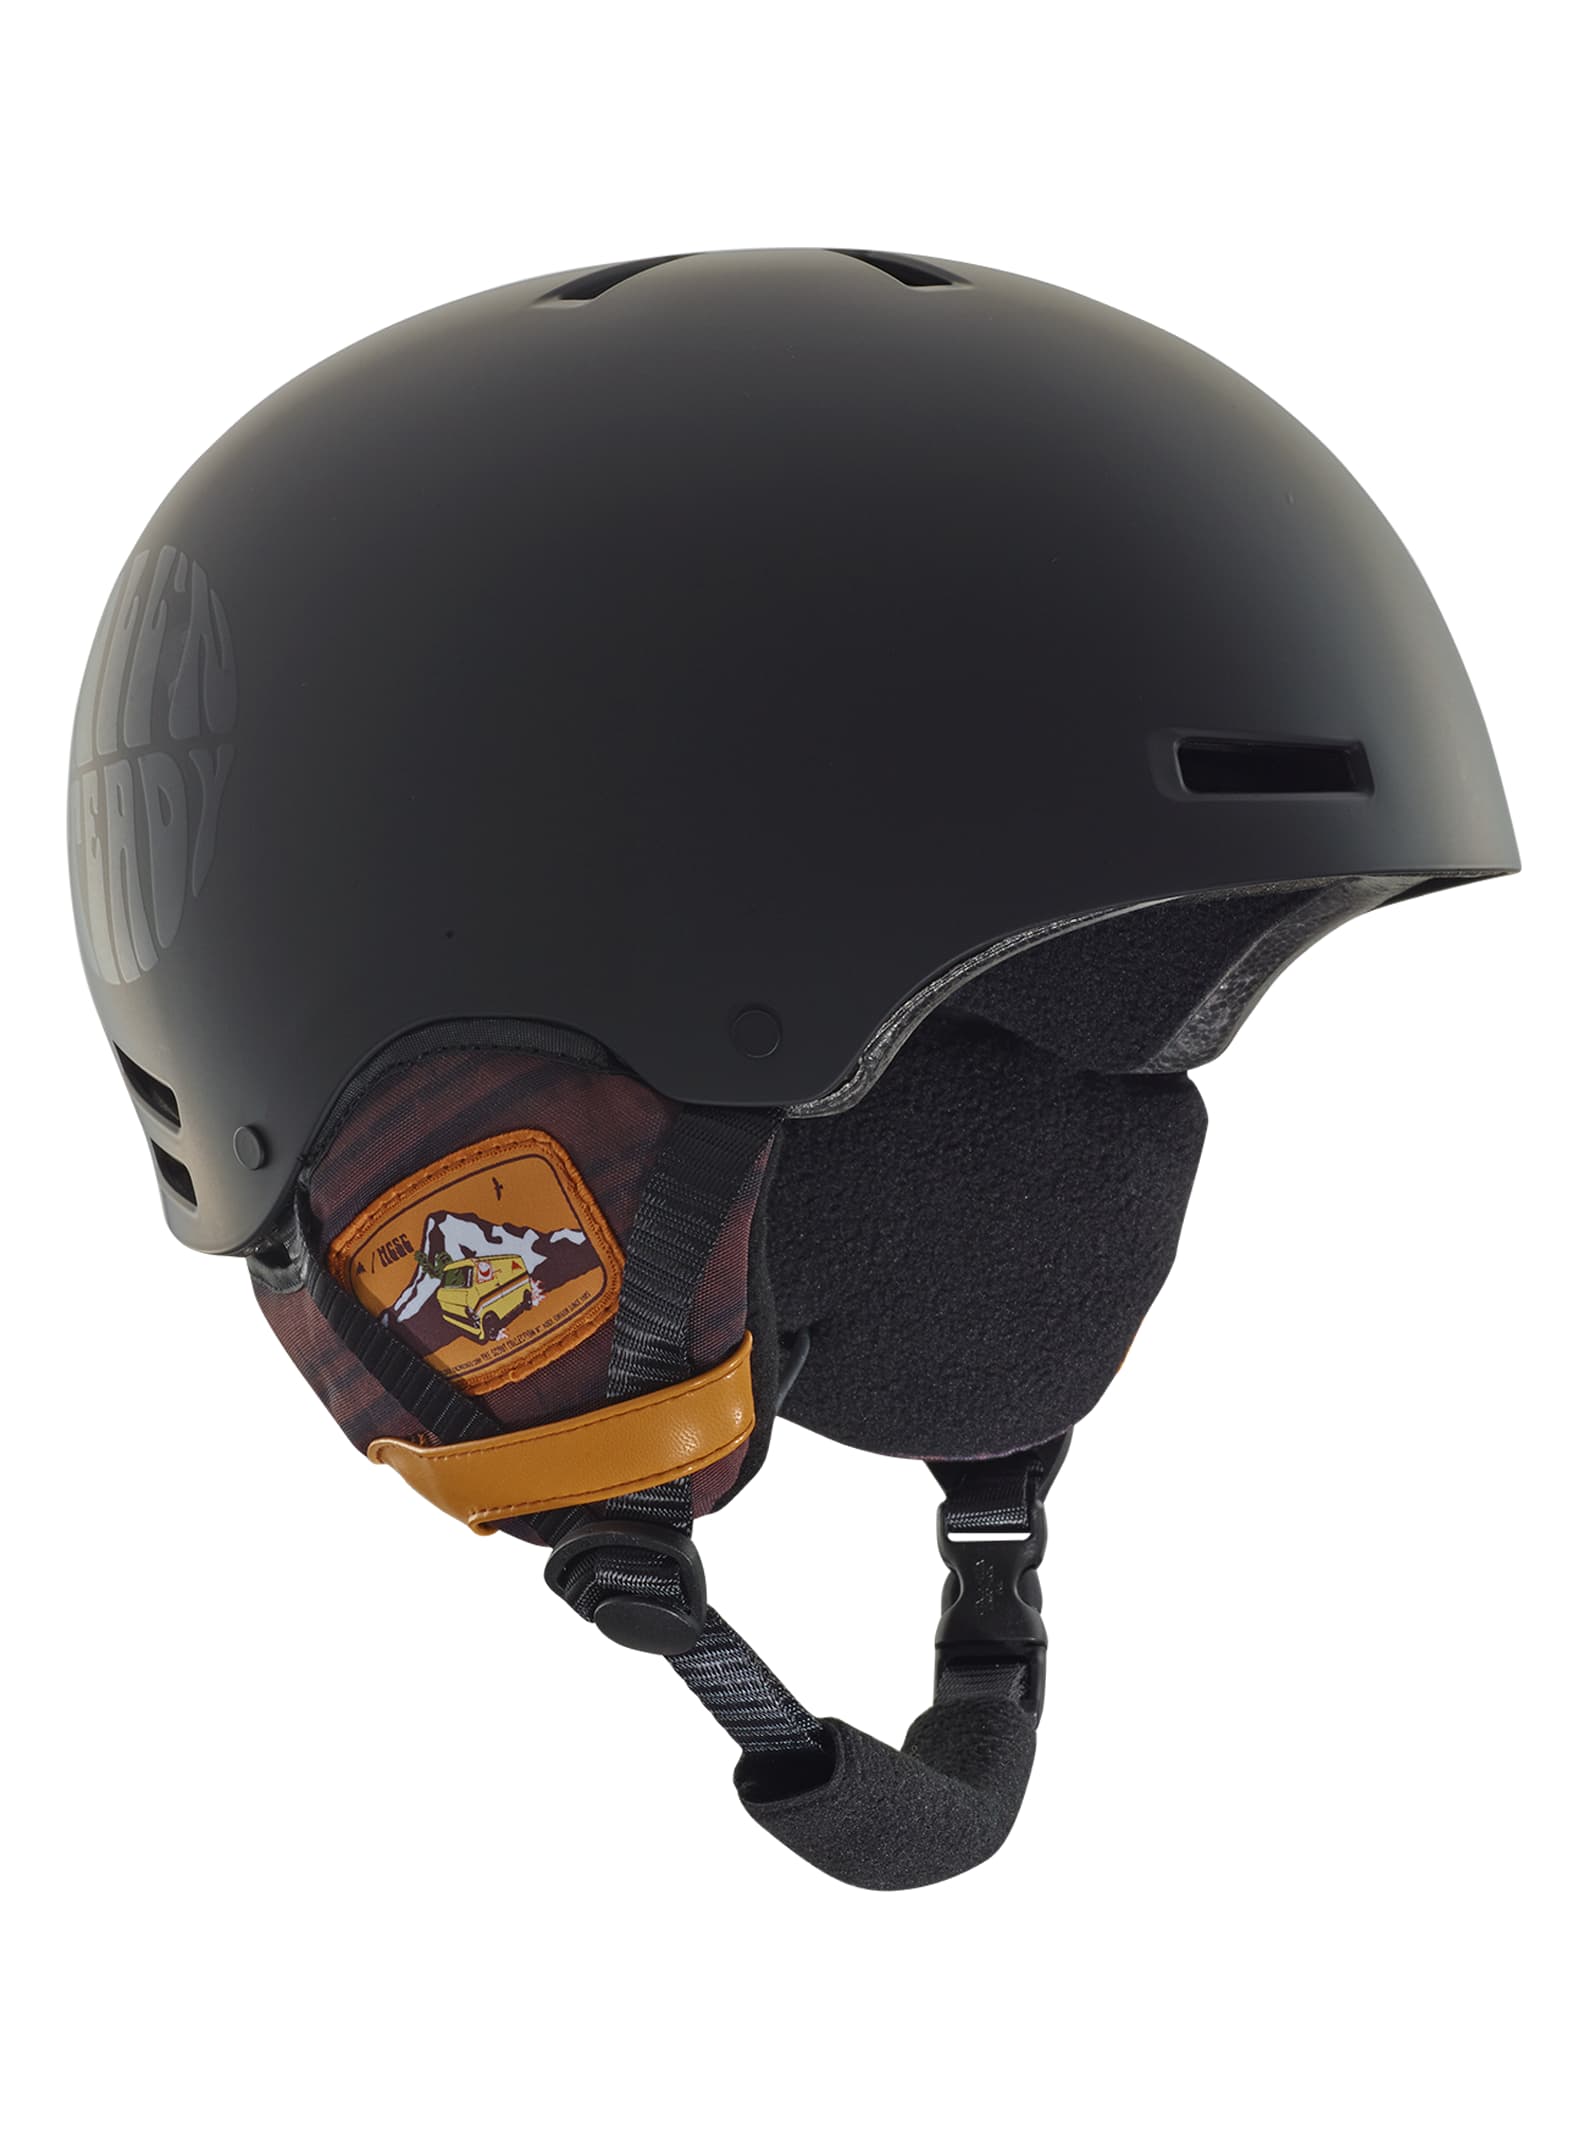 Cascade S Helmet Size Chart